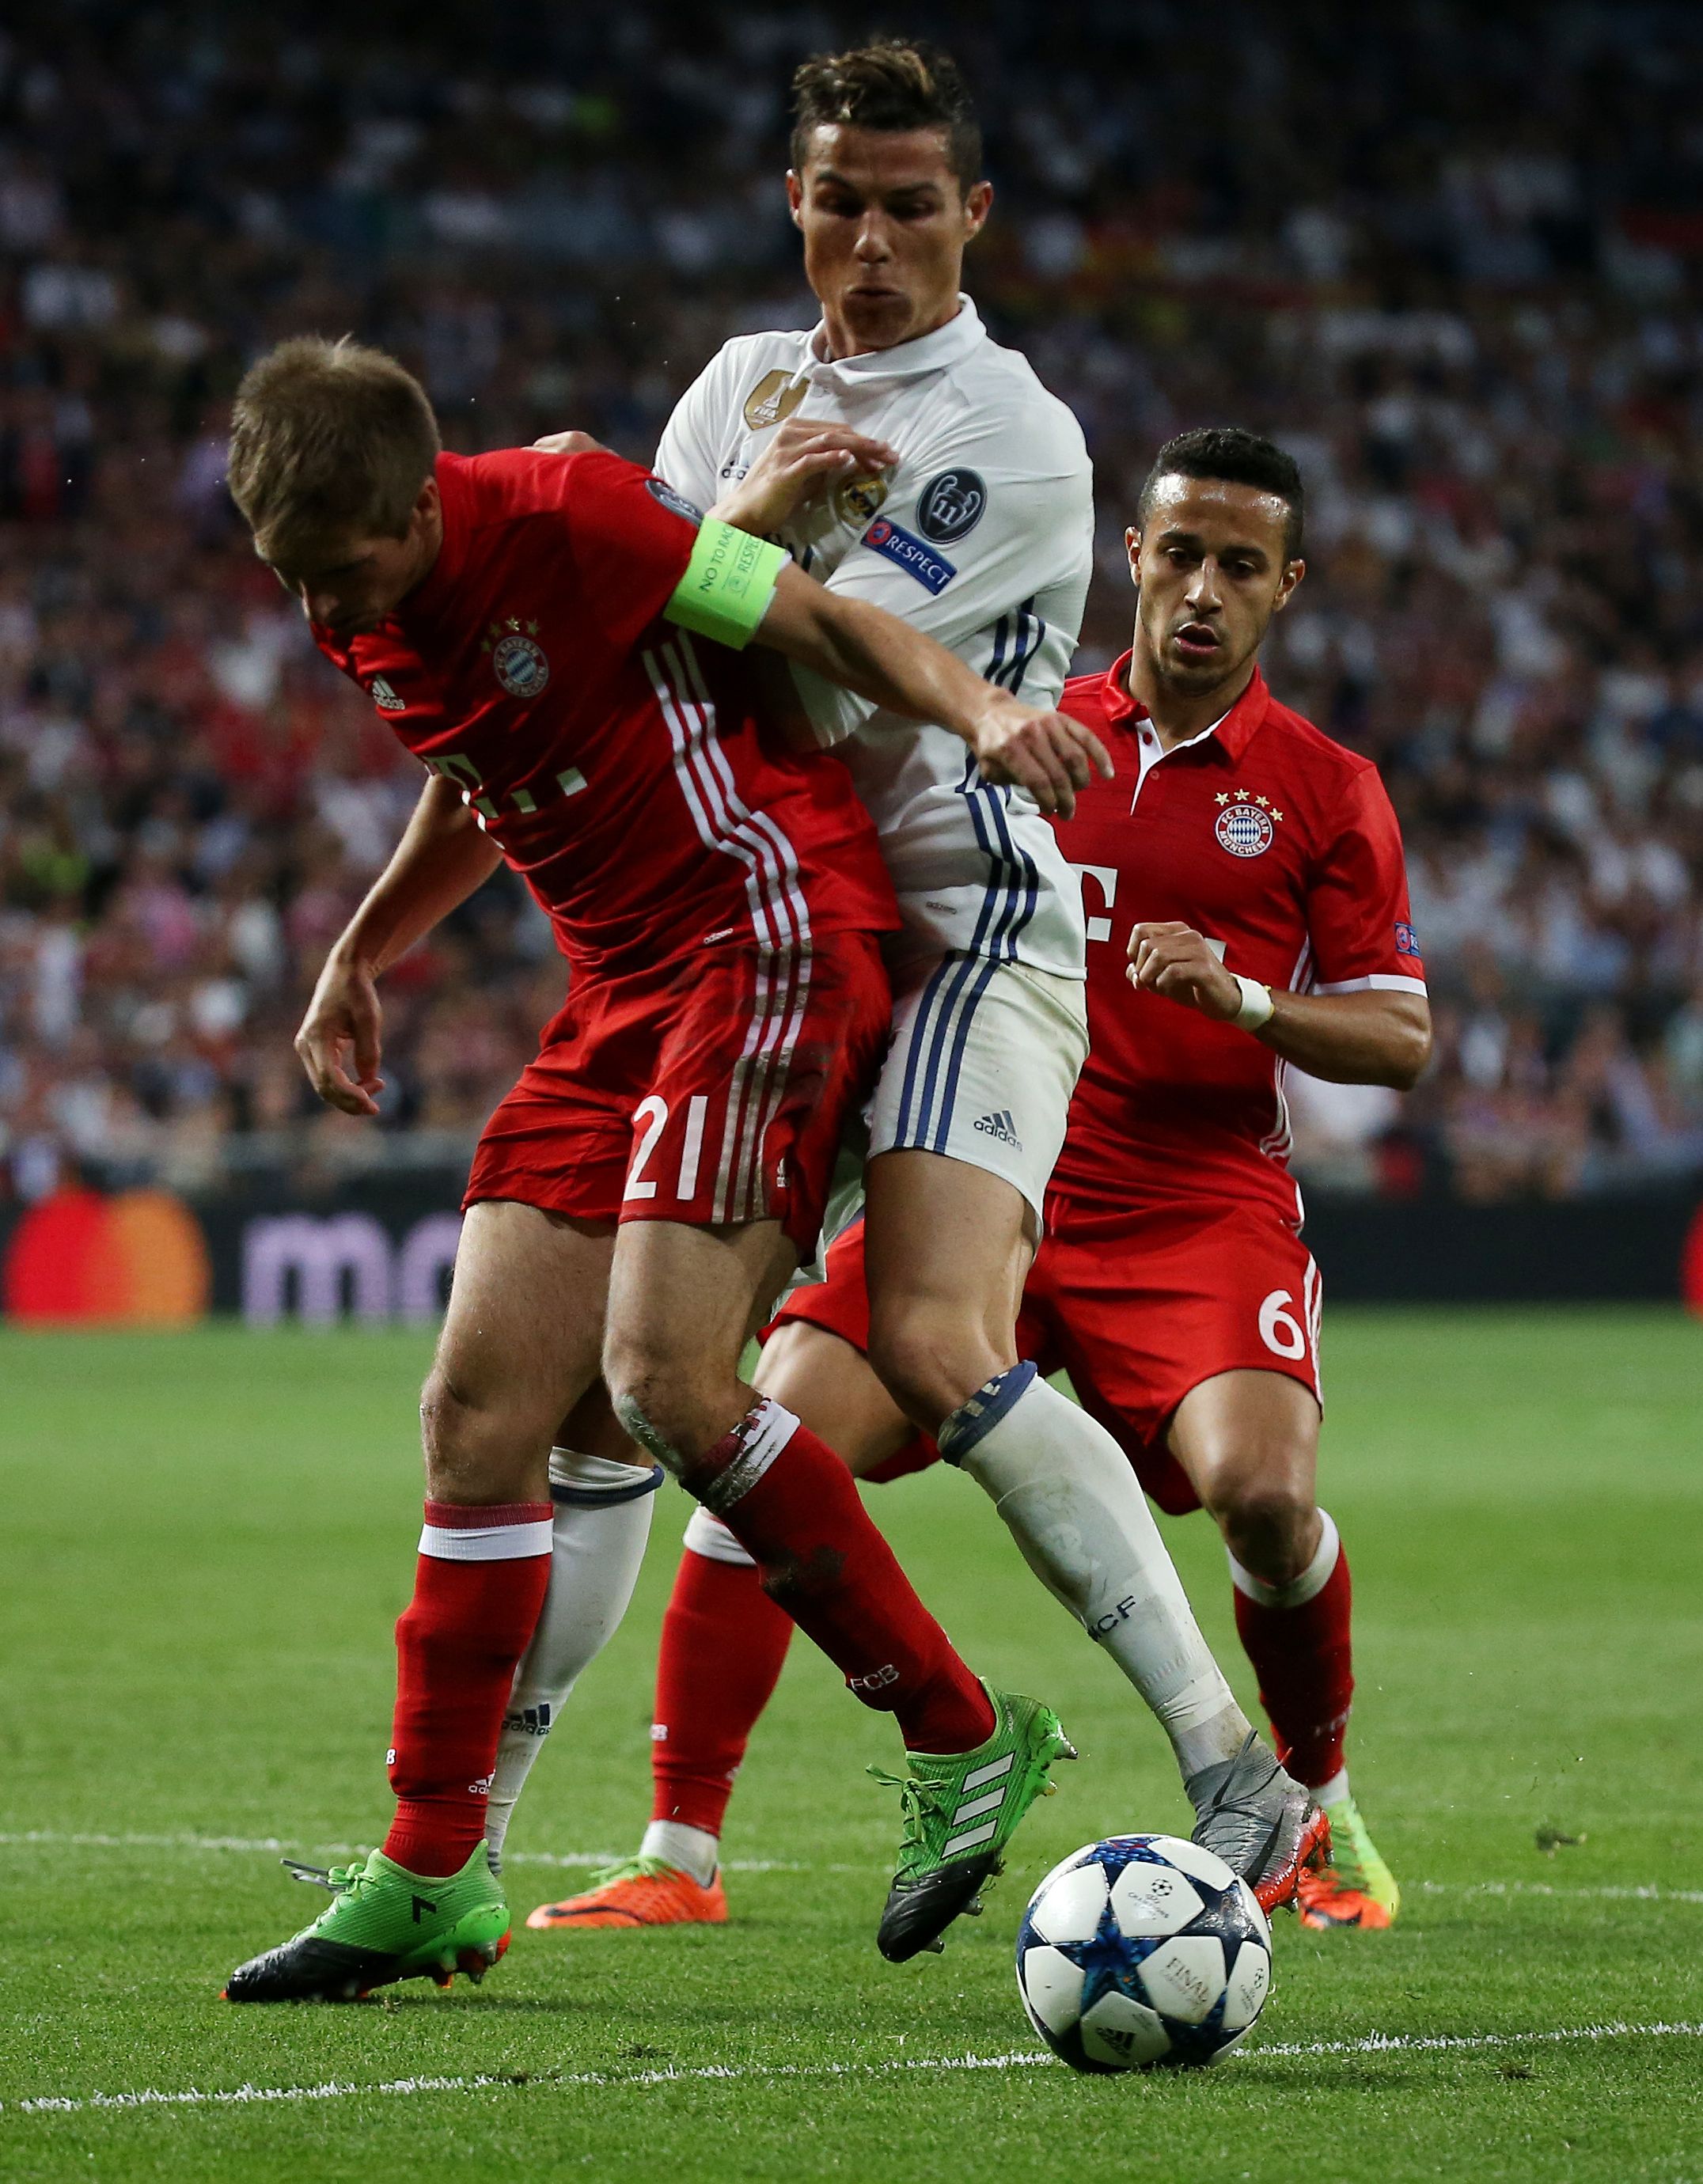 Ronaldo playing against Bayern Munich.